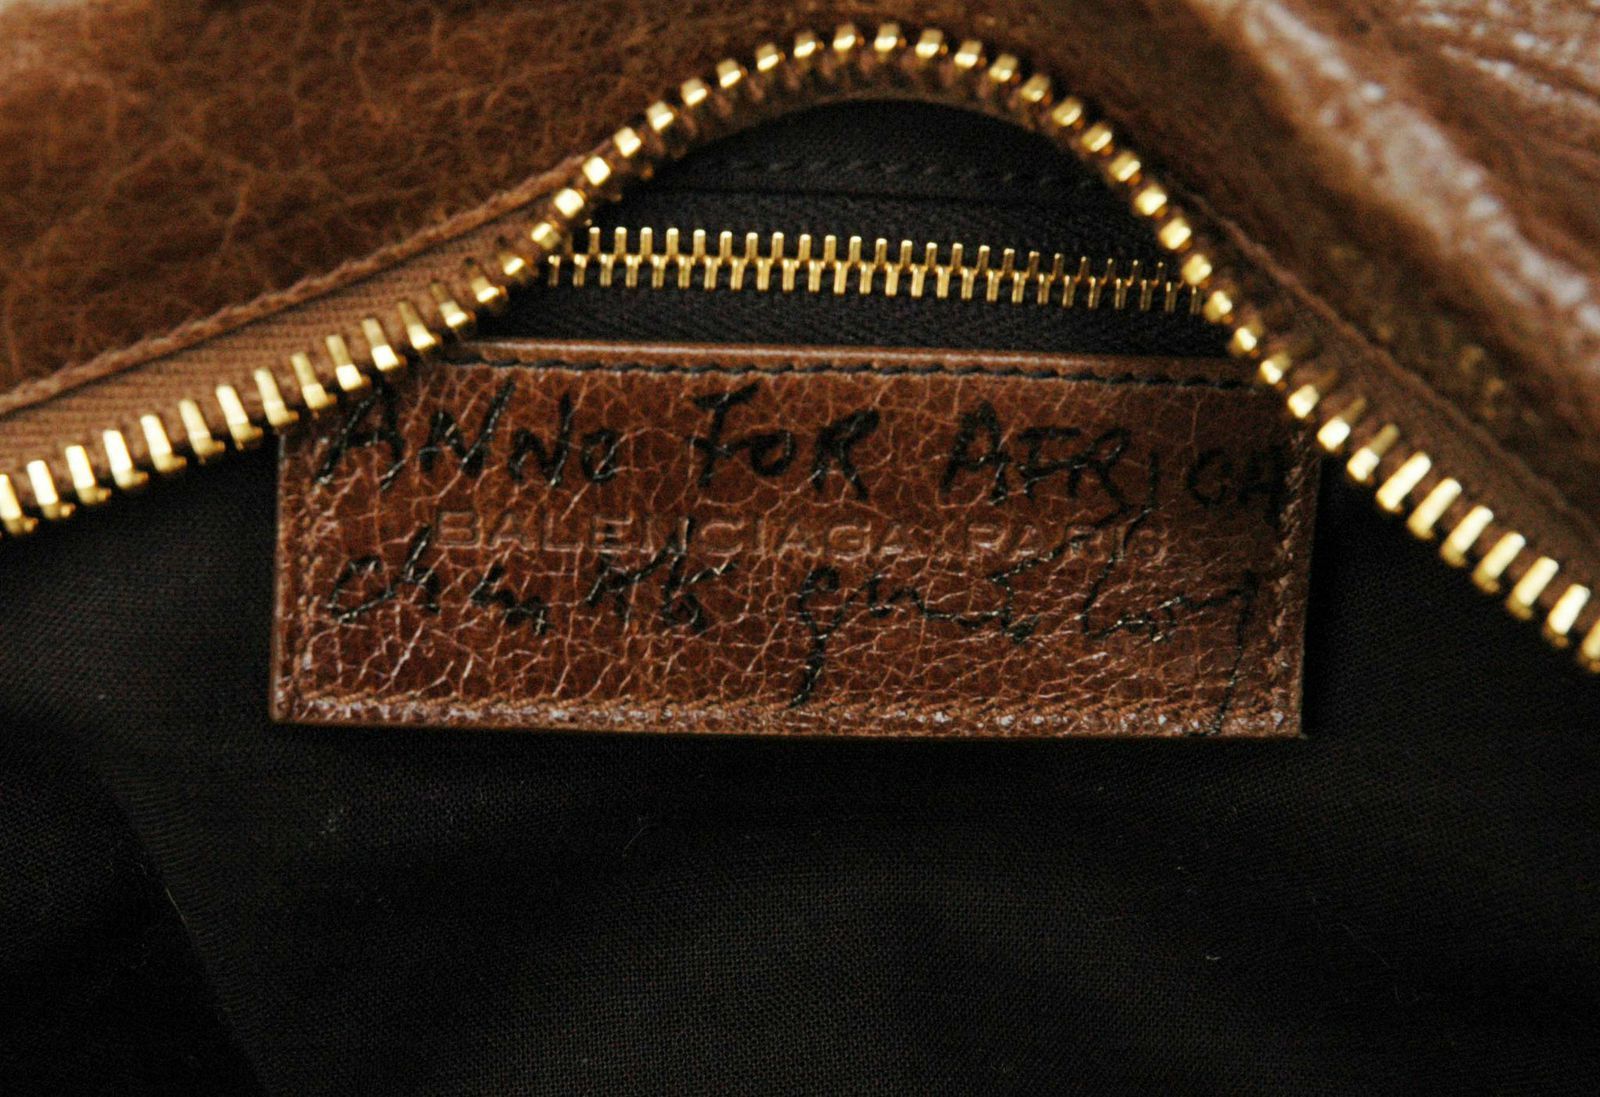 夏綠蒂甘斯柏格捐出義賣的巴黎世家(Balenciaga)城市(City)包內，還有她的親筆簽名。